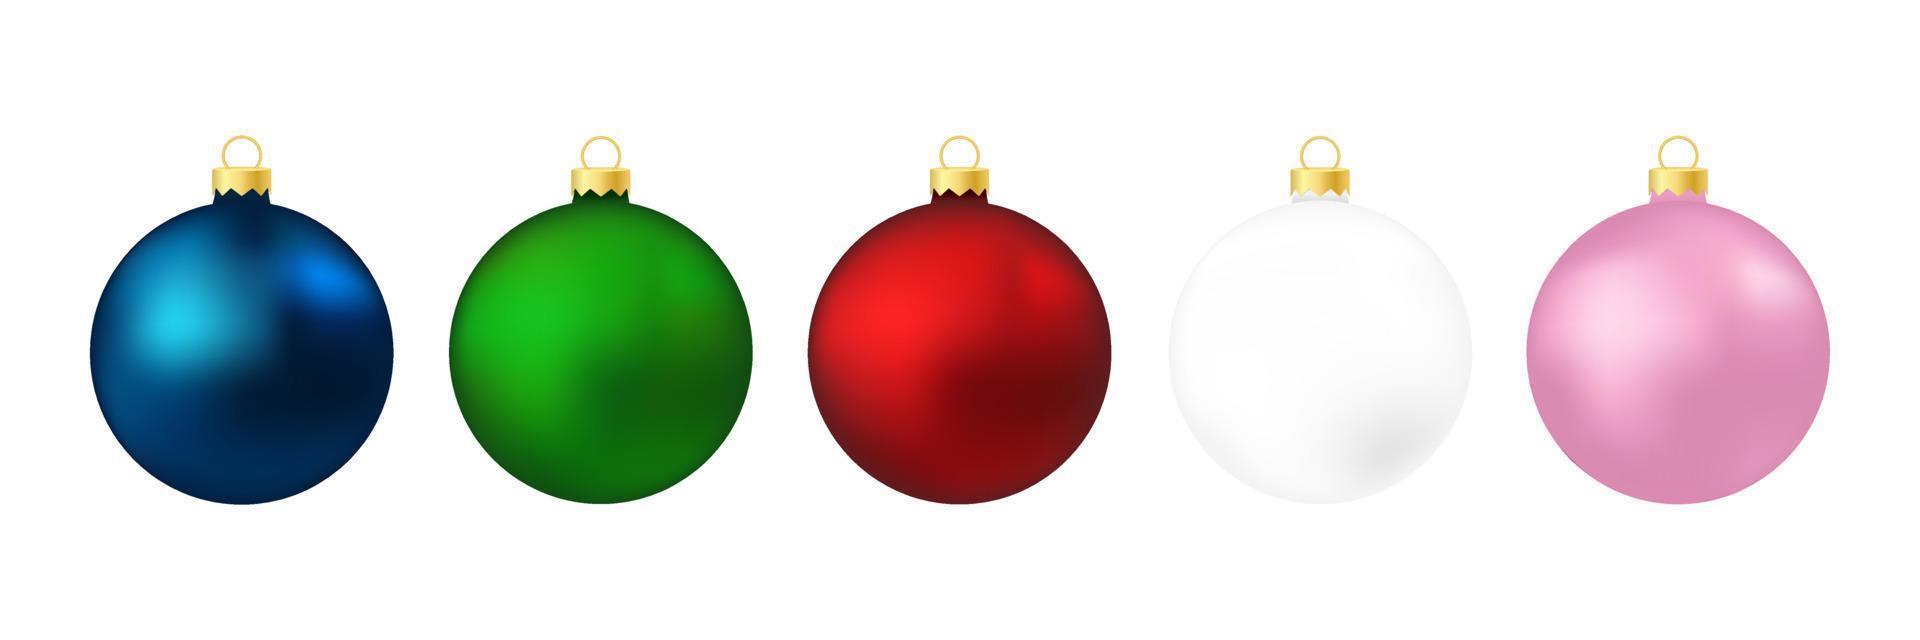 uppsättning av jul träd bollar isolerat på vit bakgrund vektor